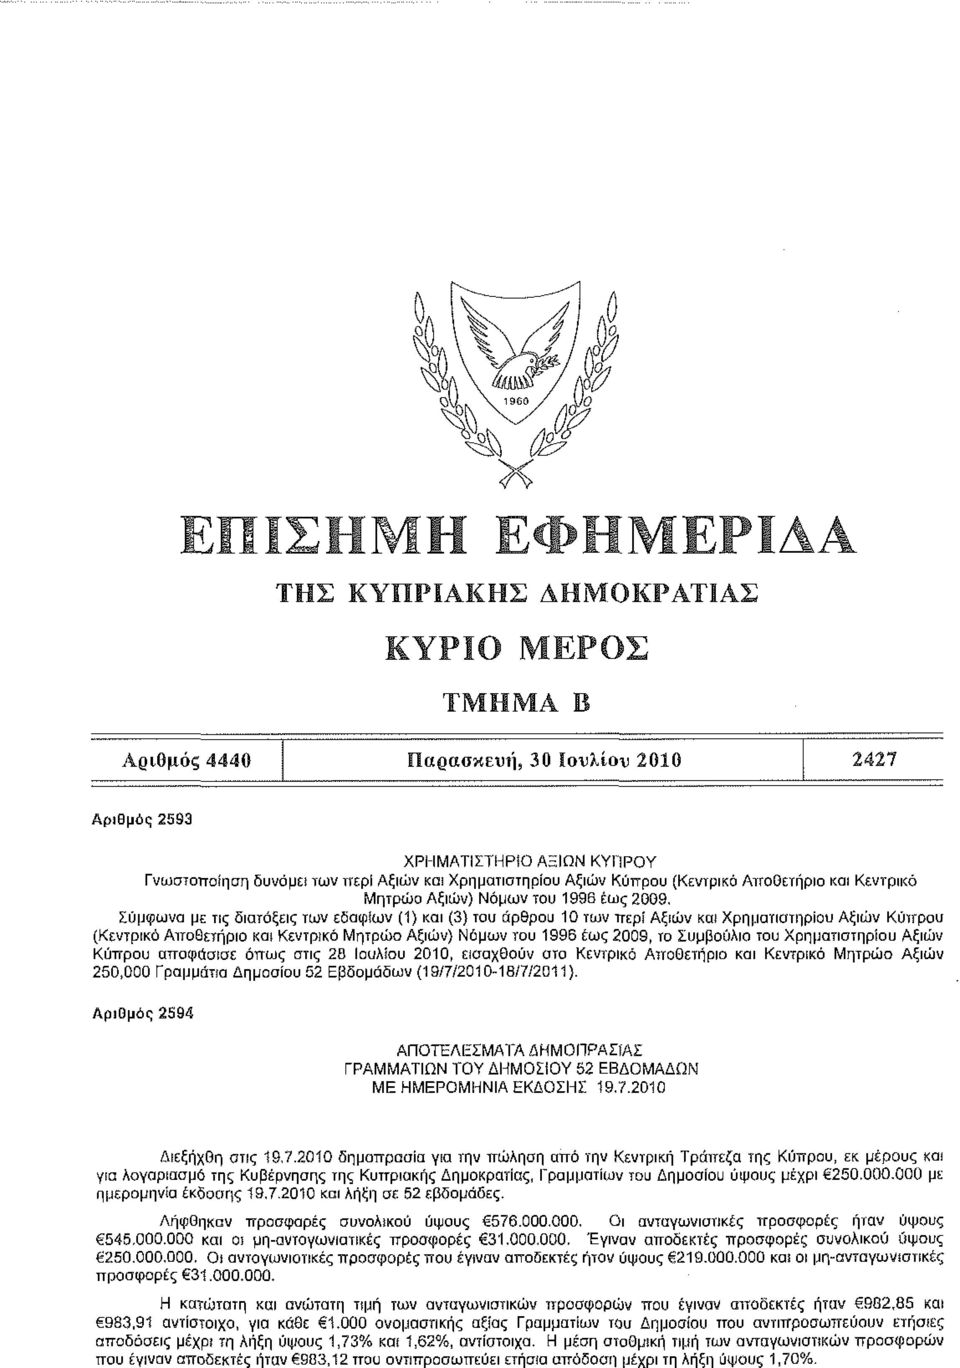 Κεντρικό Μητρώο Αξιών) Νόμων του 1996 έως 2009, το Συμβούλιο του Χρηματιστηρίου Αξιών Κόπρου αποφάσισε όπως στις 28 Ιουλίου 2010, εισαχθούν ατο Κεντρικό Αποθετήριο και Κεντρικό Μητρώο Αξιών 250,000